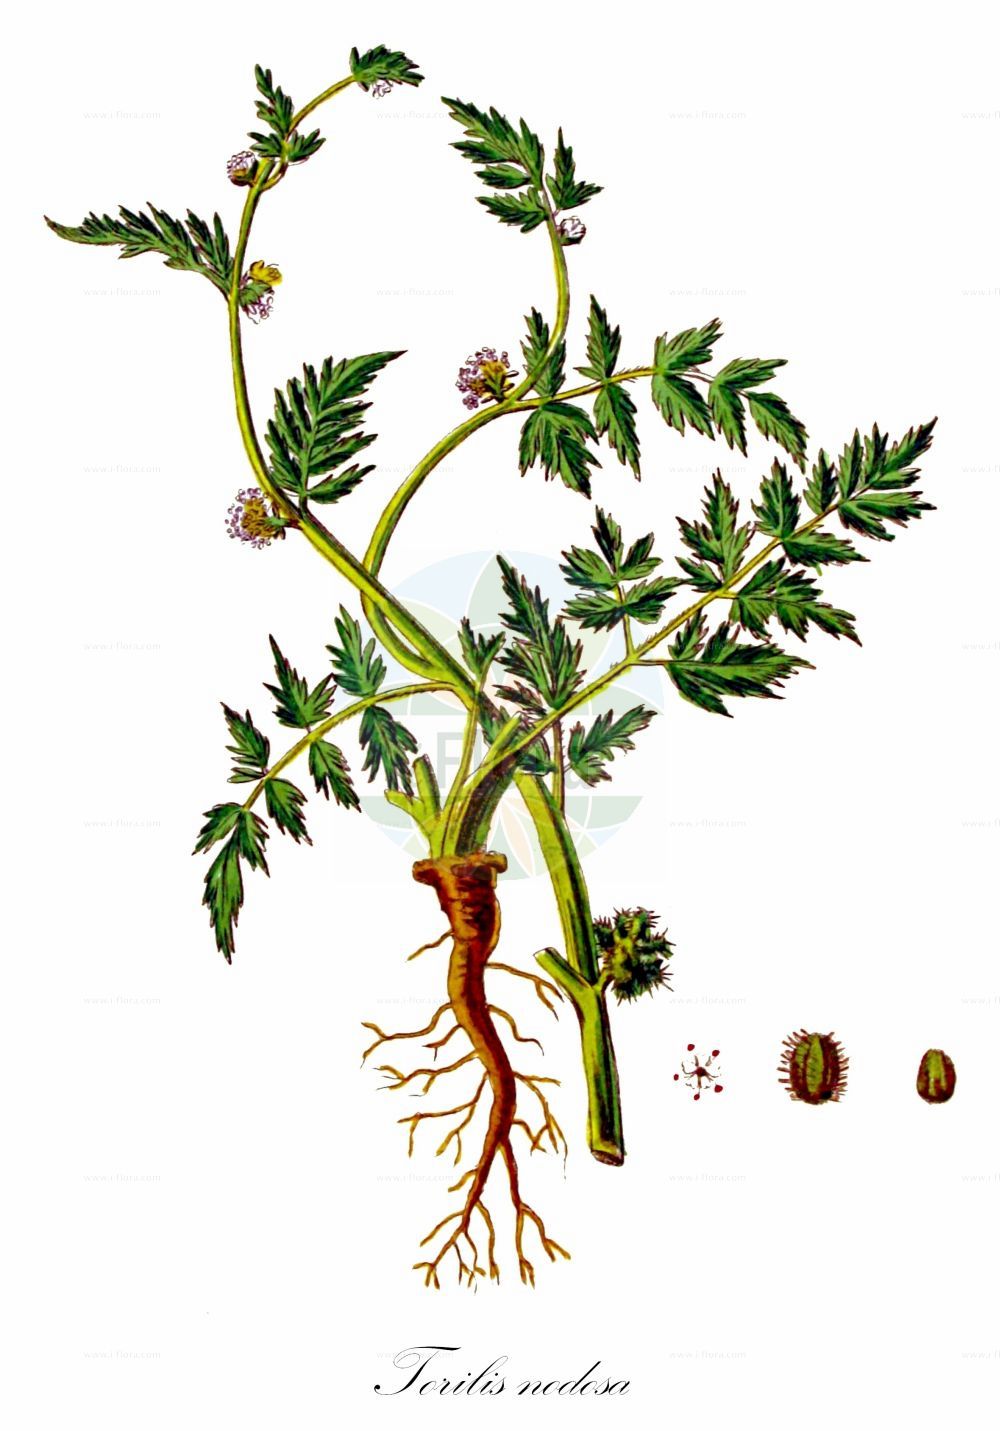 Historische Abbildung von Torilis nodosa (Knotiger Klettenkerbel - Knotted Hedge-parsley). Das Bild zeigt Blatt, Bluete, Frucht und Same. ---- Historical Drawing of Torilis nodosa (Knotiger Klettenkerbel - Knotted Hedge-parsley). The image is showing leaf, flower, fruit and seed.(Torilis nodosa,Knotiger Klettenkerbel,Knotted Hedge-parsley,Tordylium nodosum,Torilis nodosa,Knotiger Klettenkerbel,Knotted Hedge-parsley,Hedgehog Parsley,Knotted Bur Parsley,Torilis,Klettenkerbel,Hedgeparsley,Apiaceae,Doldengewächse,Carrot family,Blatt,Bluete,Frucht,Same,leaf,flower,fruit,seed,Kops (1800-1934))